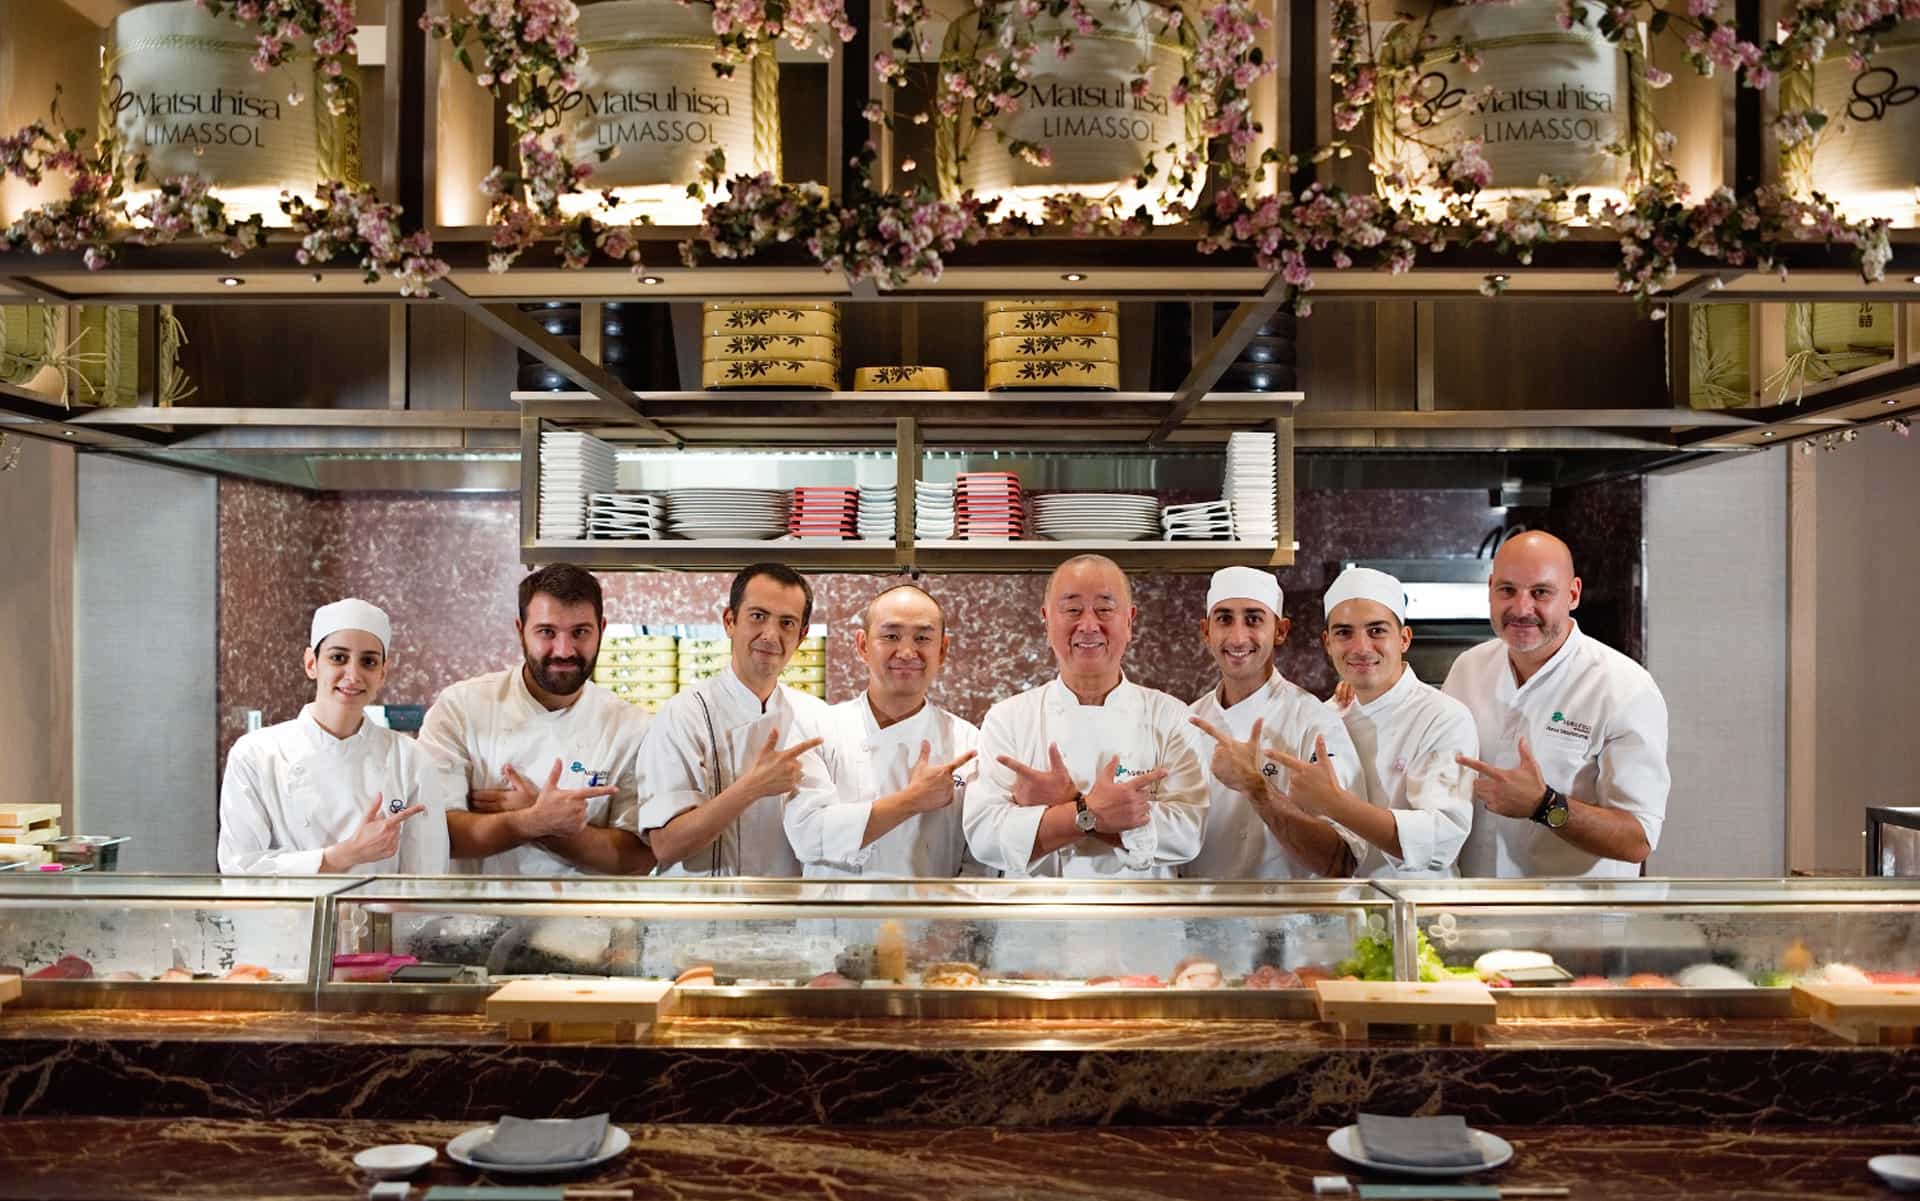 Зіркові шефи: ресторан італійської кухні очолює відомий лондонський шеф-кухар Джорджо Локателлі, відзначений зірками Мішлен, а  ресторан для поціновувачів різноманітних та оригінальних страв -Matsuhisa Limassol , чолює всесвітньо відомий шеф-кухар Нобу Мацухіса.